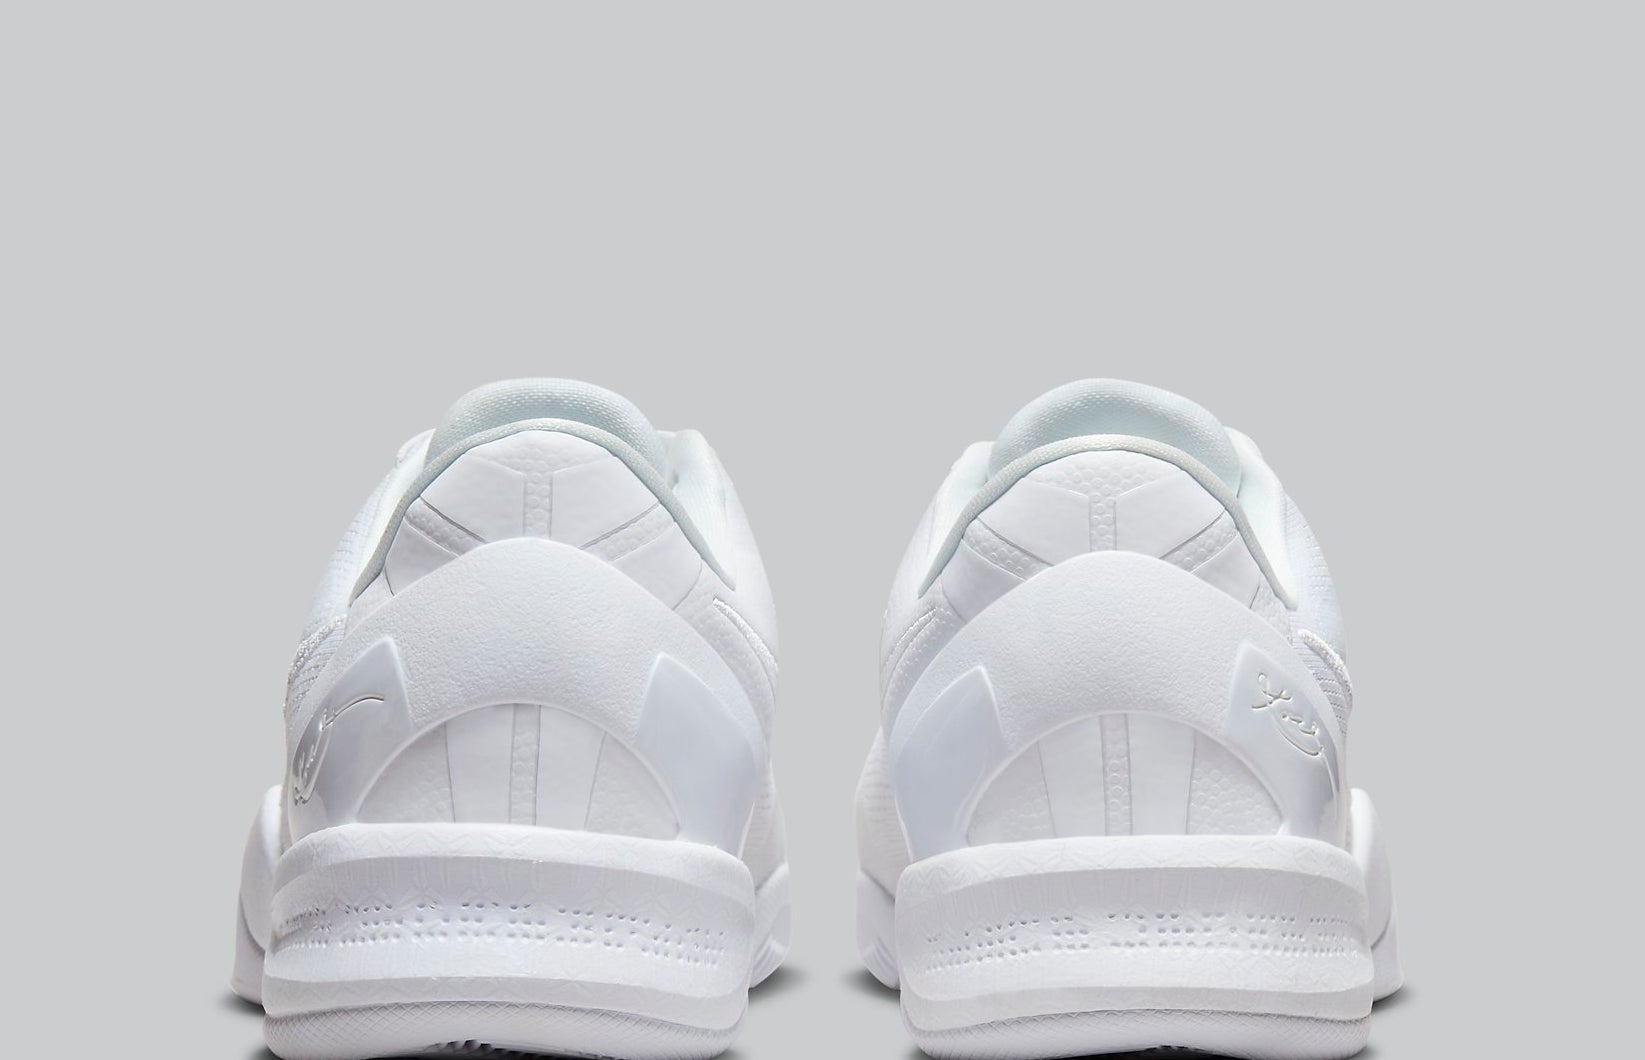 Nike Kobe 8 VIII Halo Triple White Release Date FJ9364-100 Heel